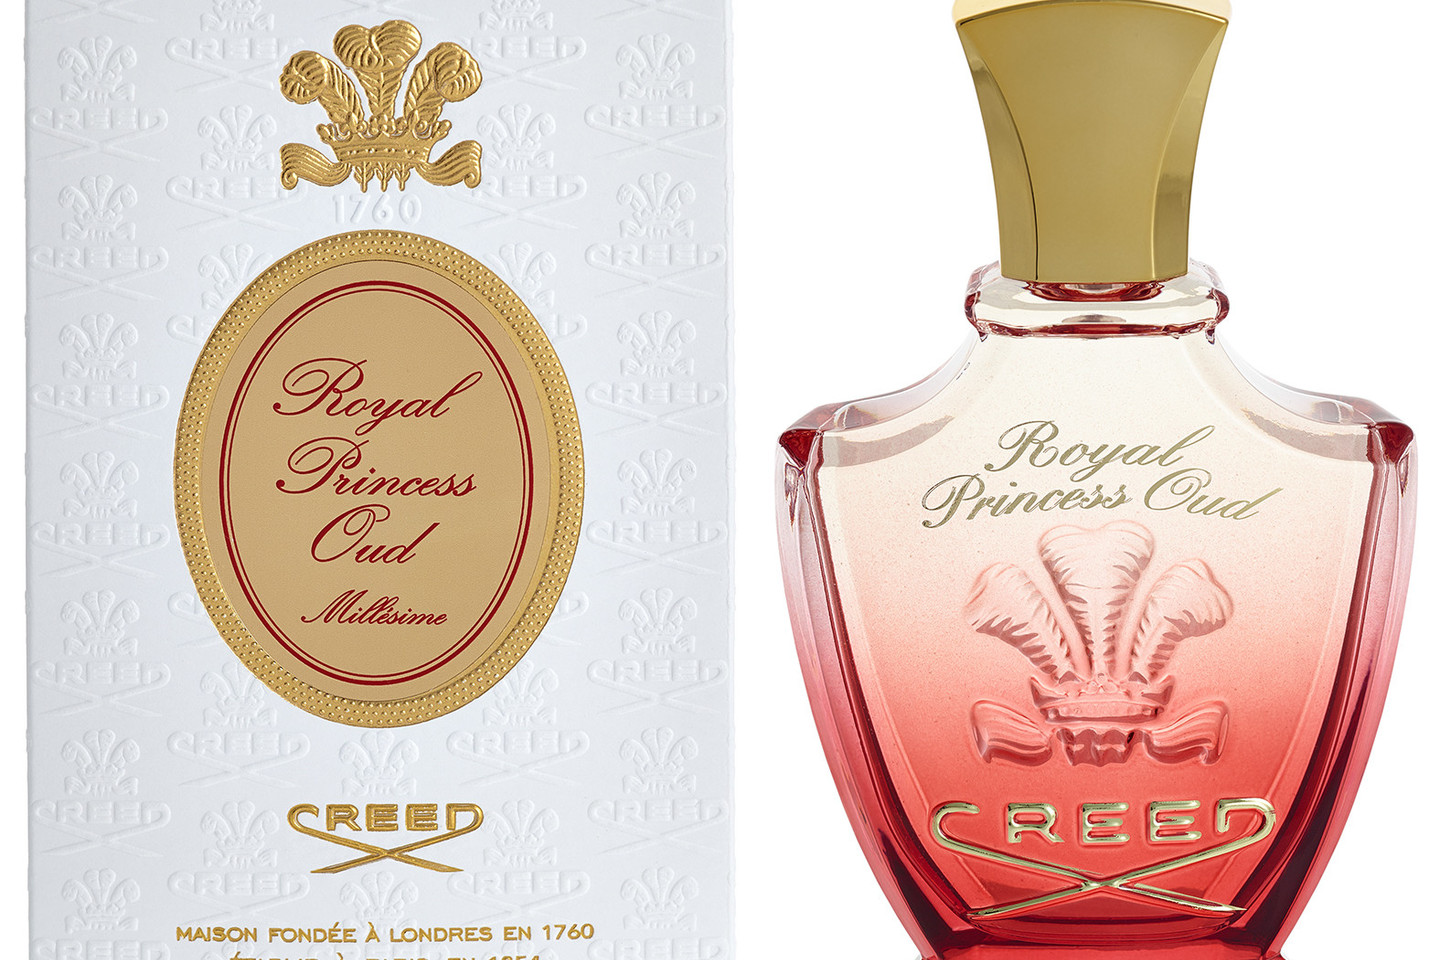 Aukštosios parfumerijos kūriniai (įsigyti galima tik salonuose „Kristiana“).<br>„Kristiana“/“Fragrances International“ nuotr.